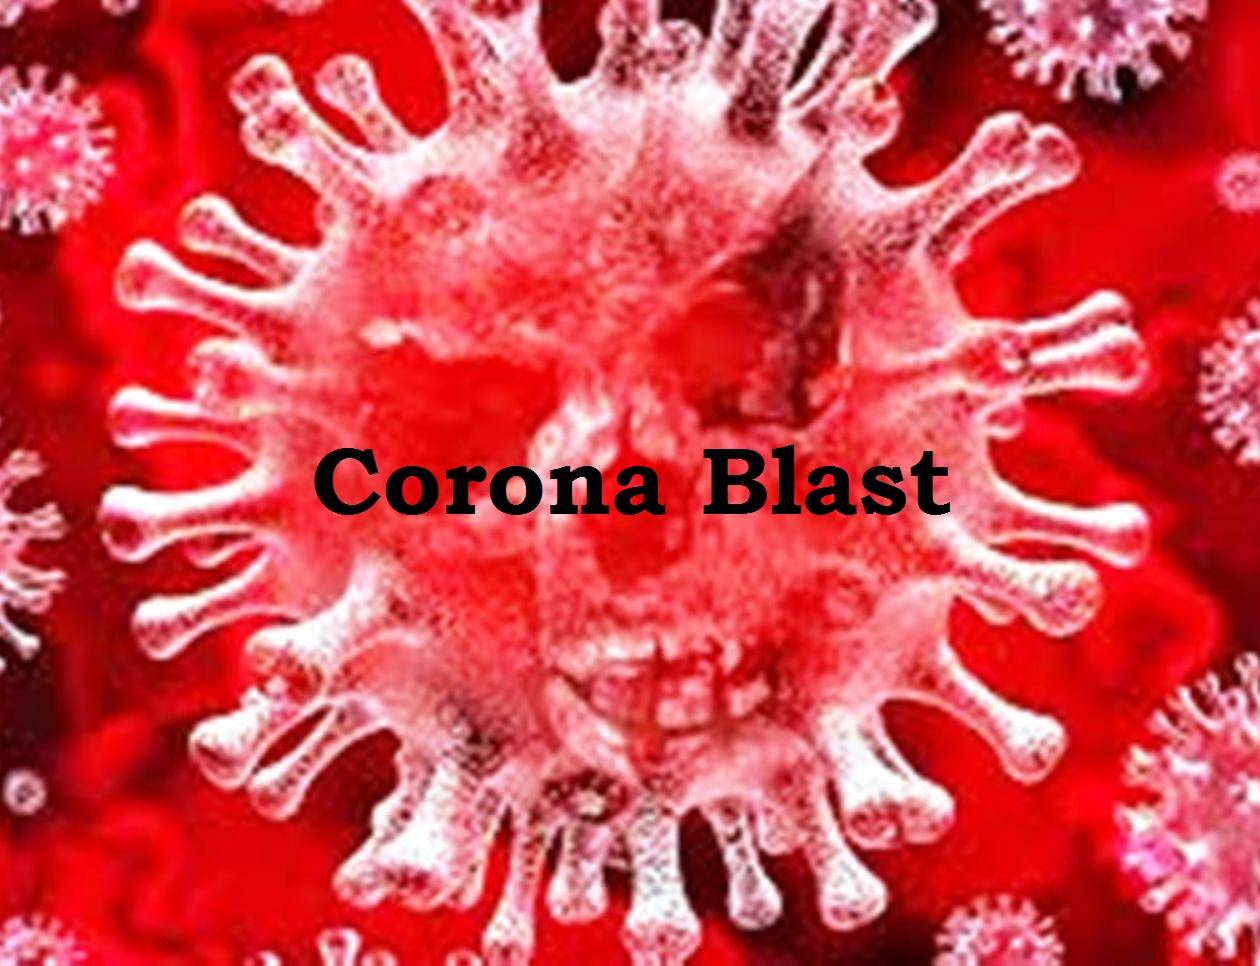 कोरोना अपडेट 4-10-2020: आज फिर फूटा कोरोना बम, 158 पॉजिटिव मिले